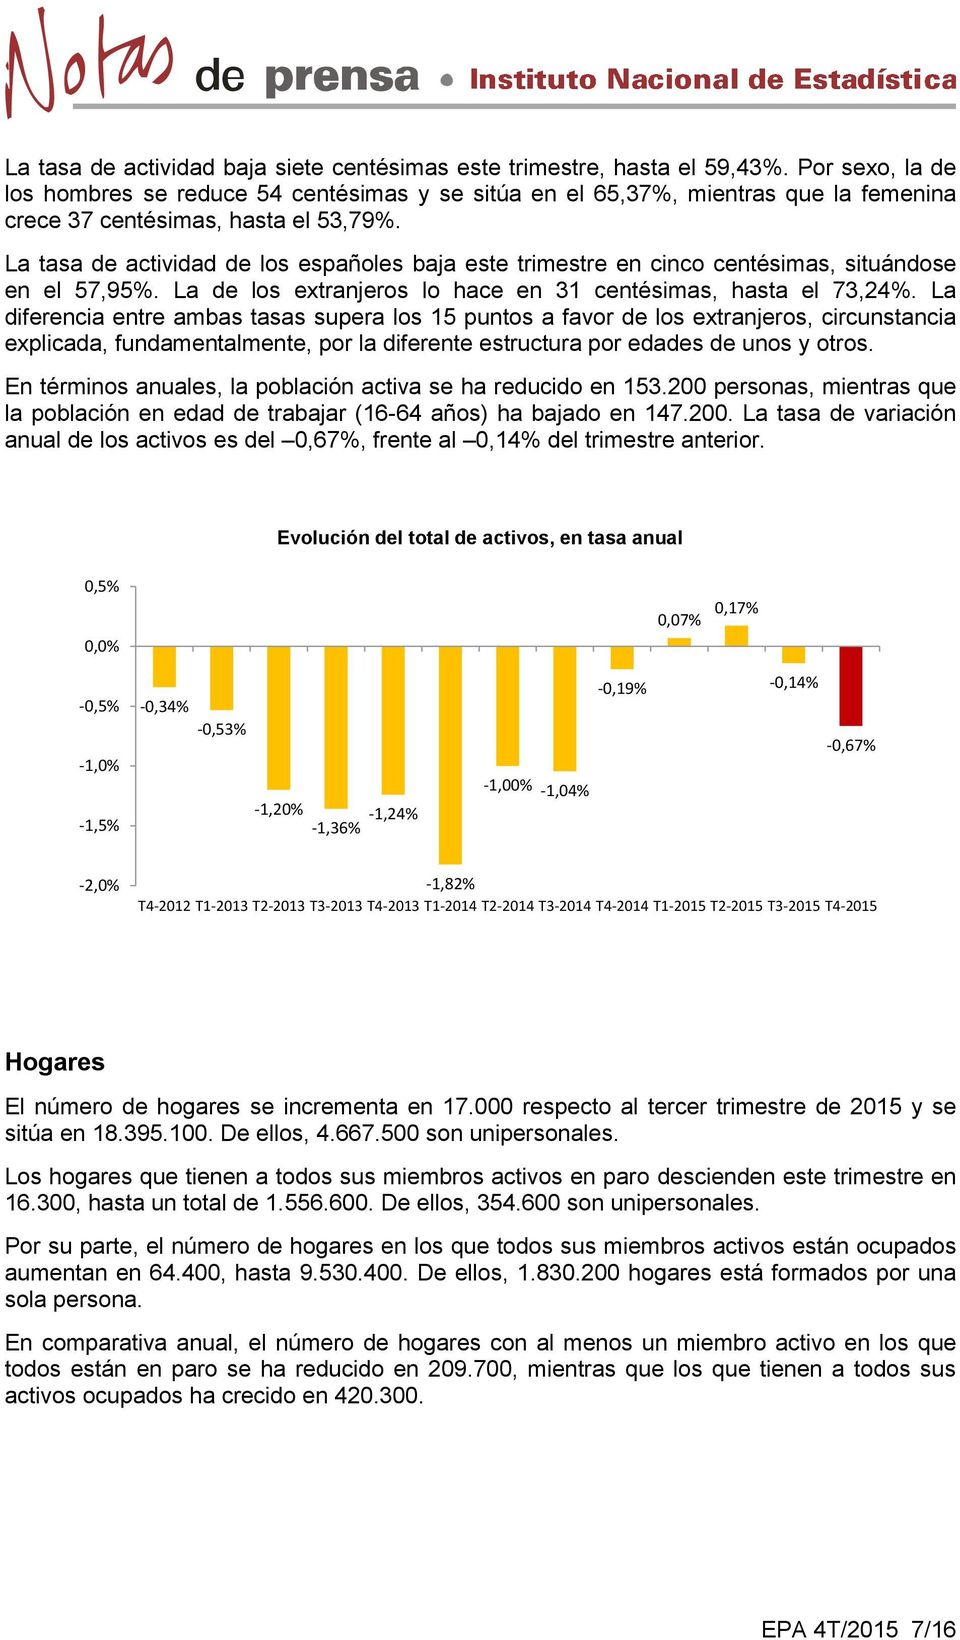 La tasa de actividad de los españoles baja este trimestre en cinco centésimas, situándose en el 57,95%. La de los extranjeros lo hace en 31 centésimas, hasta el 73,24%.